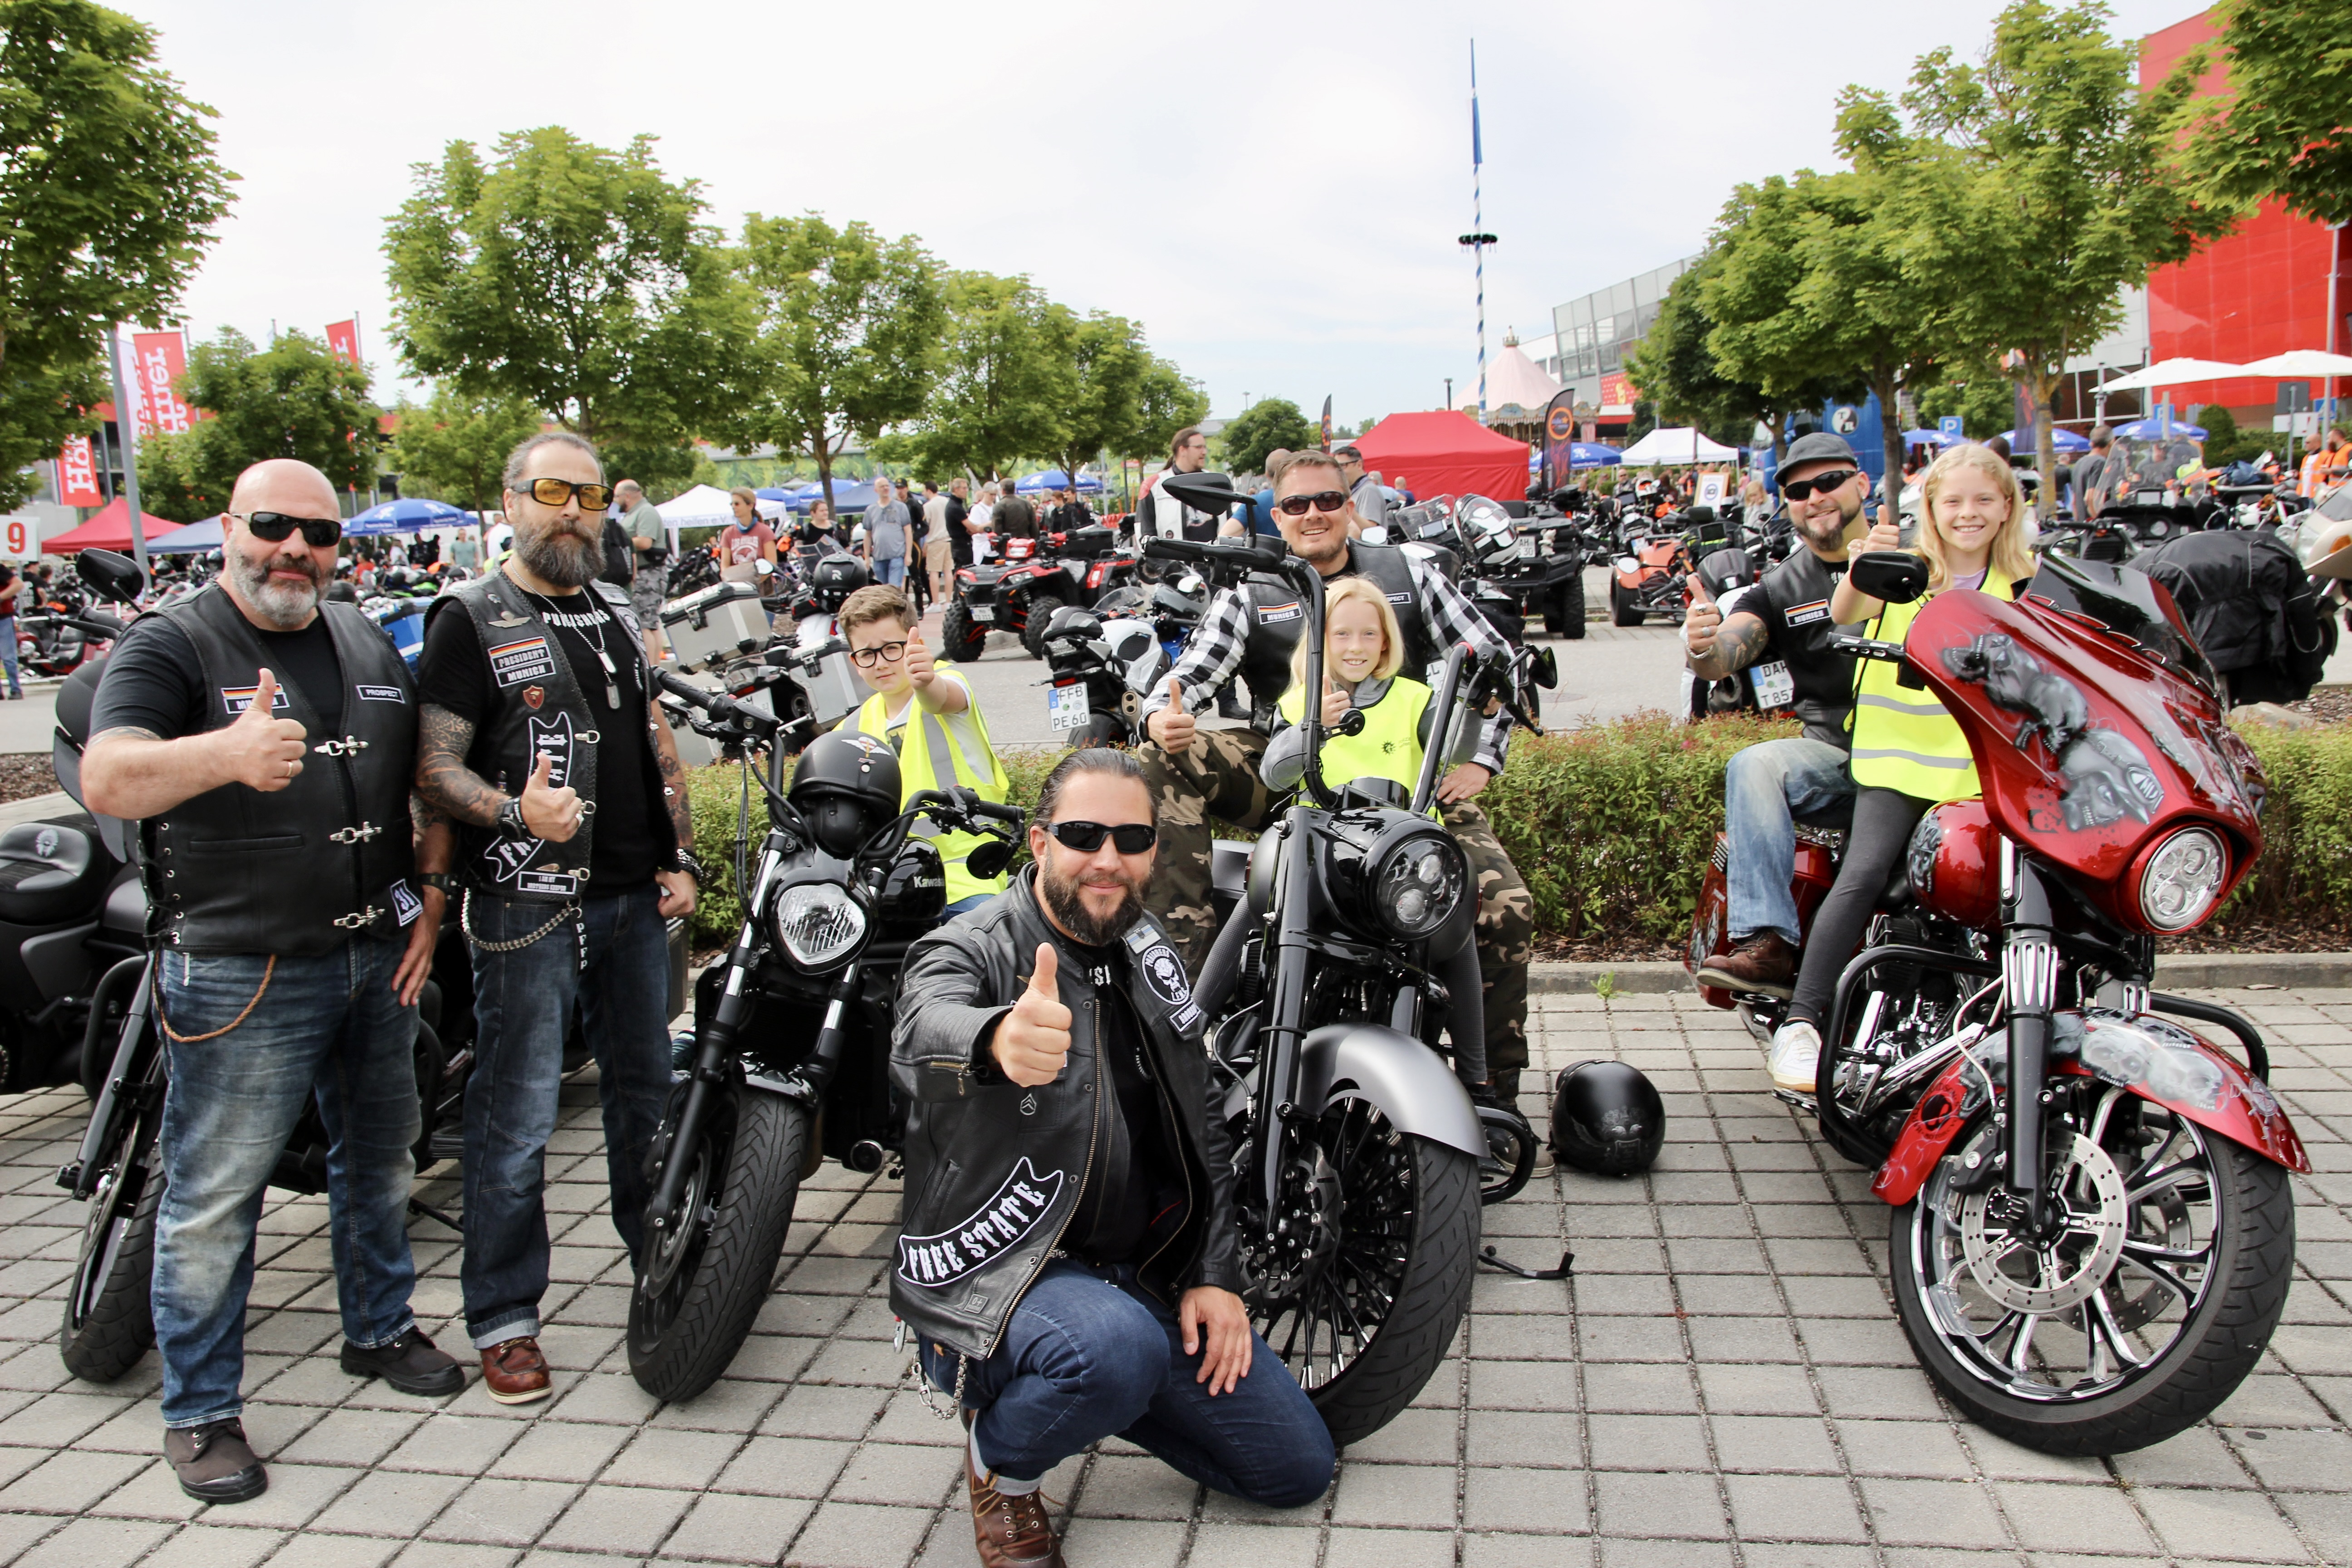 Zum ersten Mal dabei: die Biker vom Punishers MC Free State Bavaria Chapter